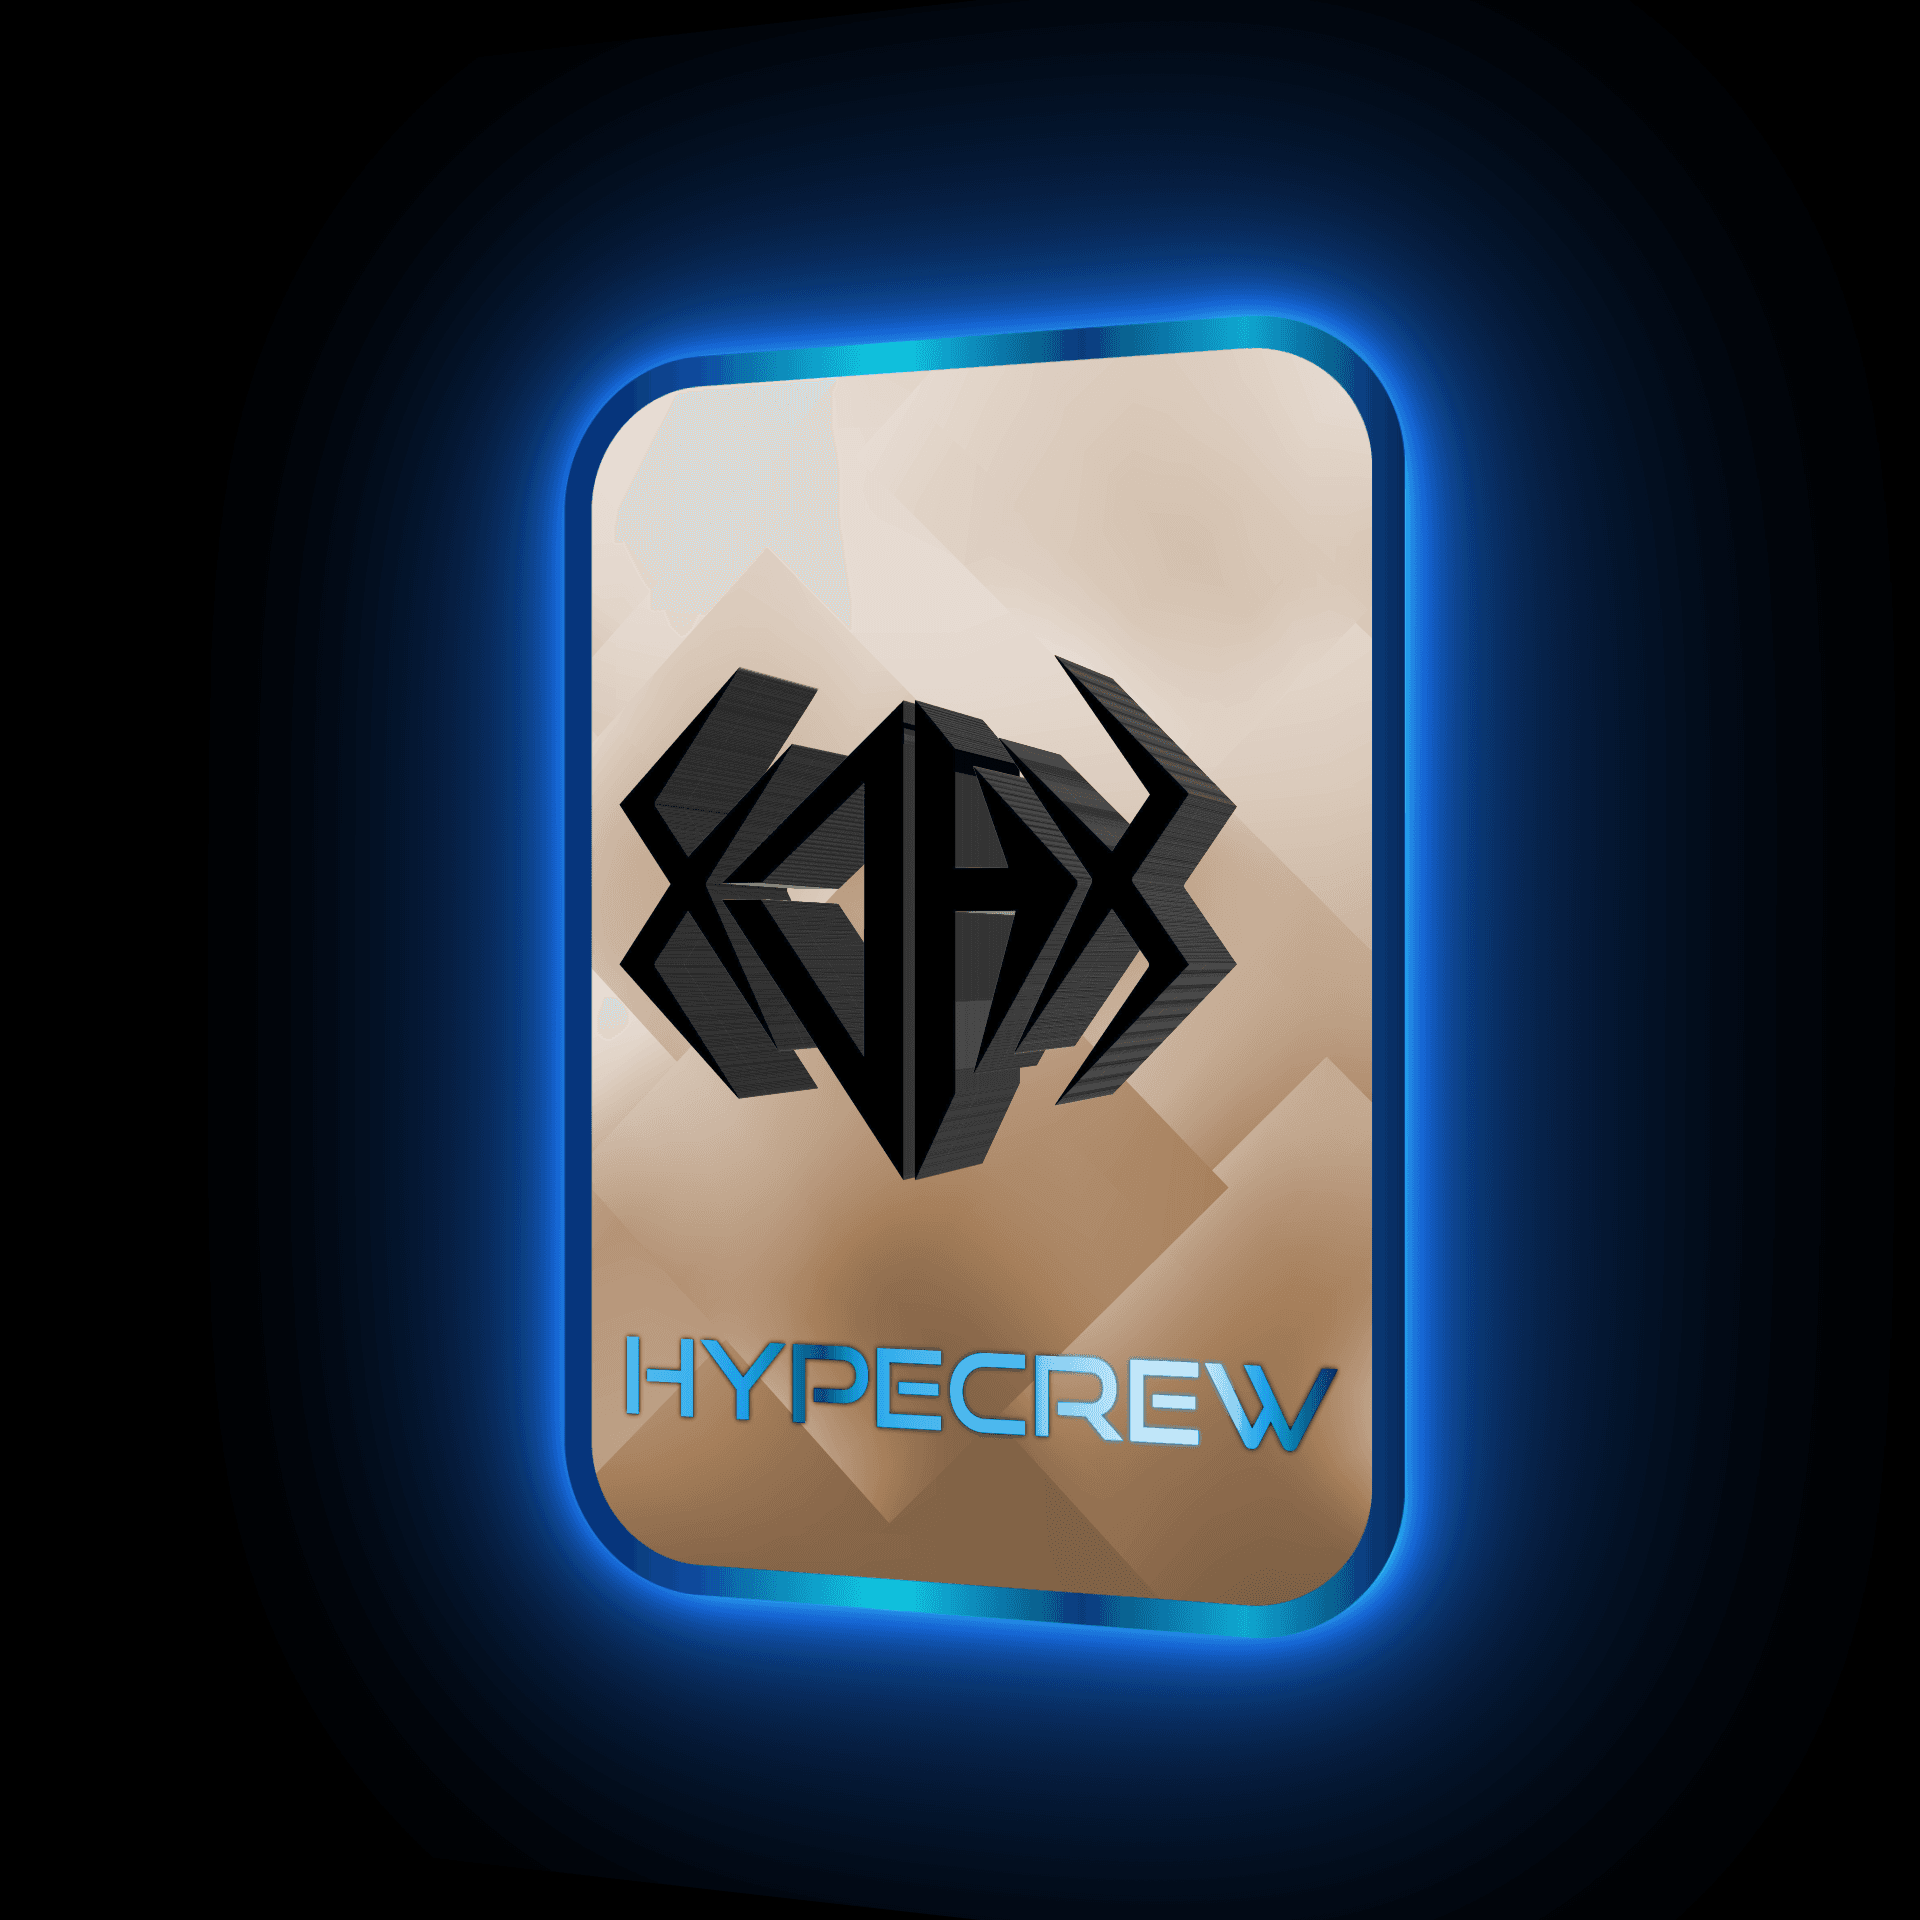 HypeCrew Emblem Trading Card